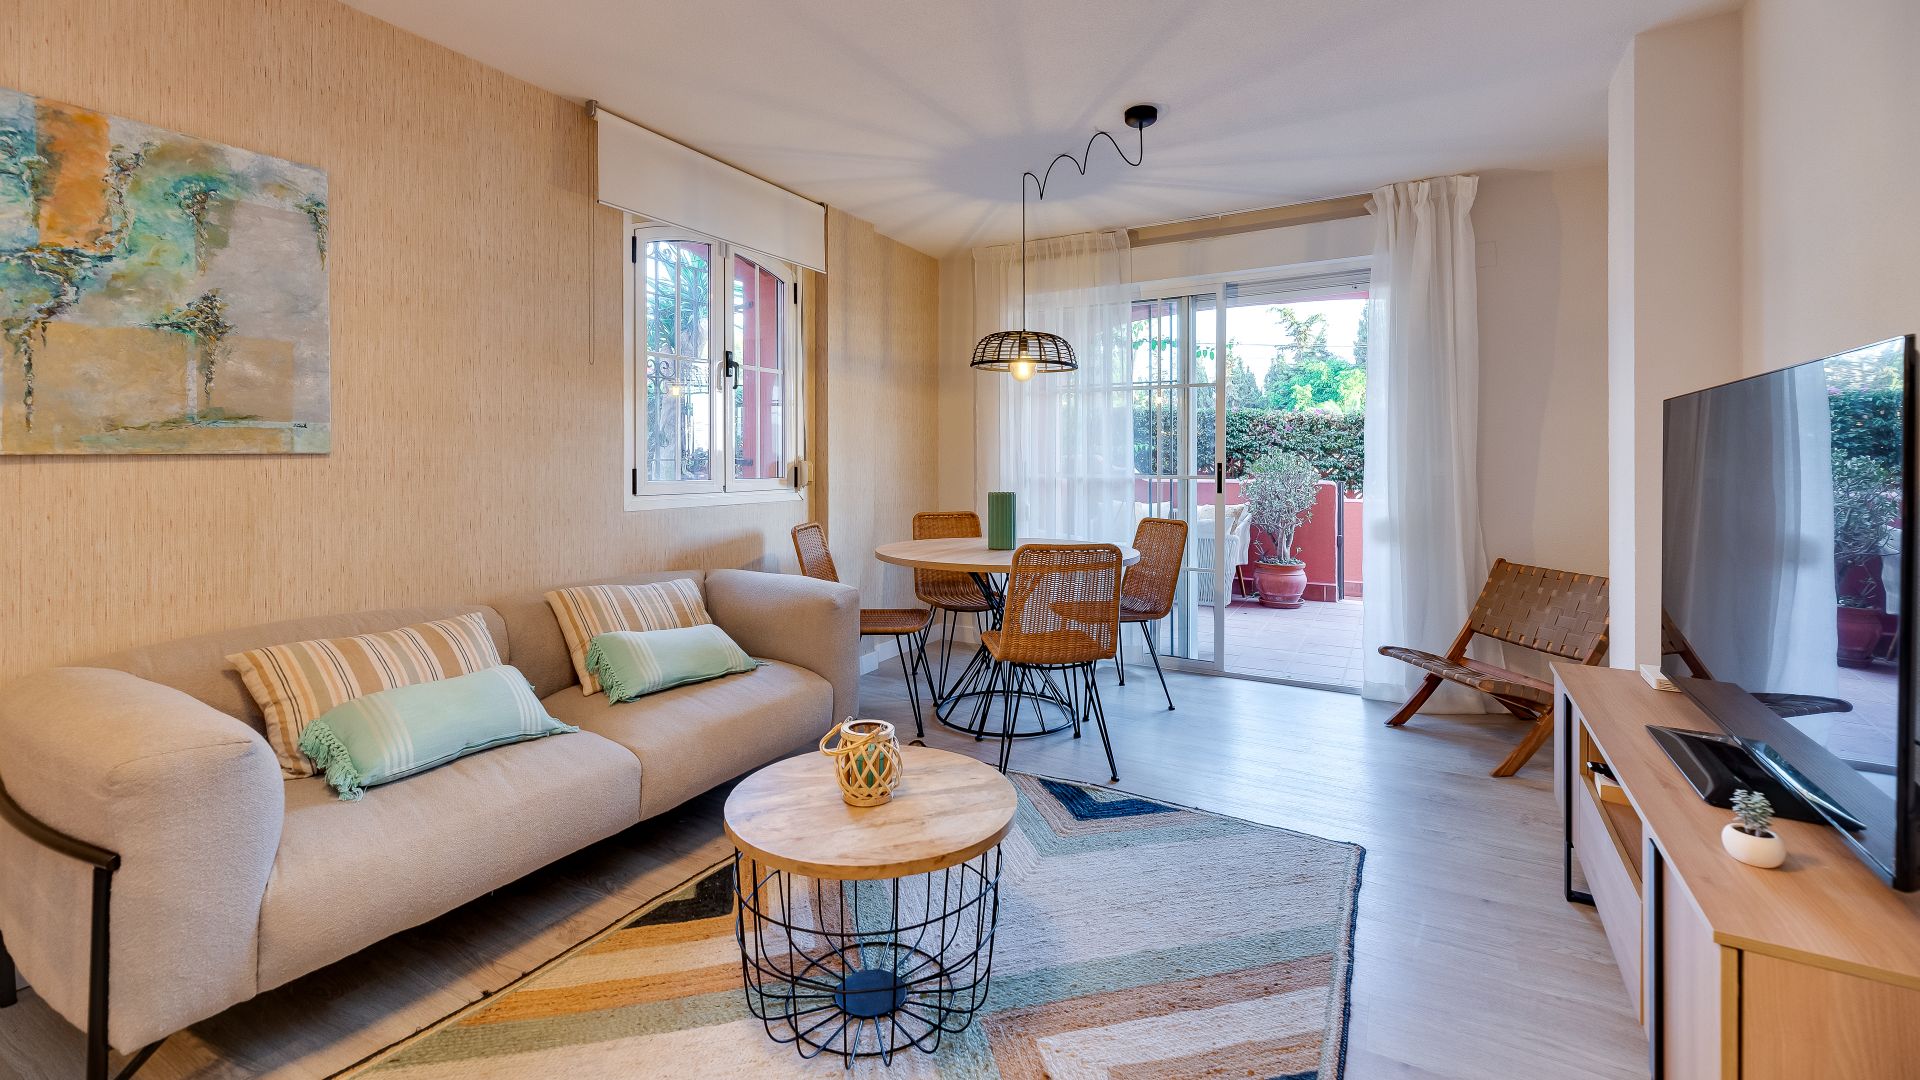 Helle und moderne Wohnung in Strandnähe | Engel & Völkers Marbella